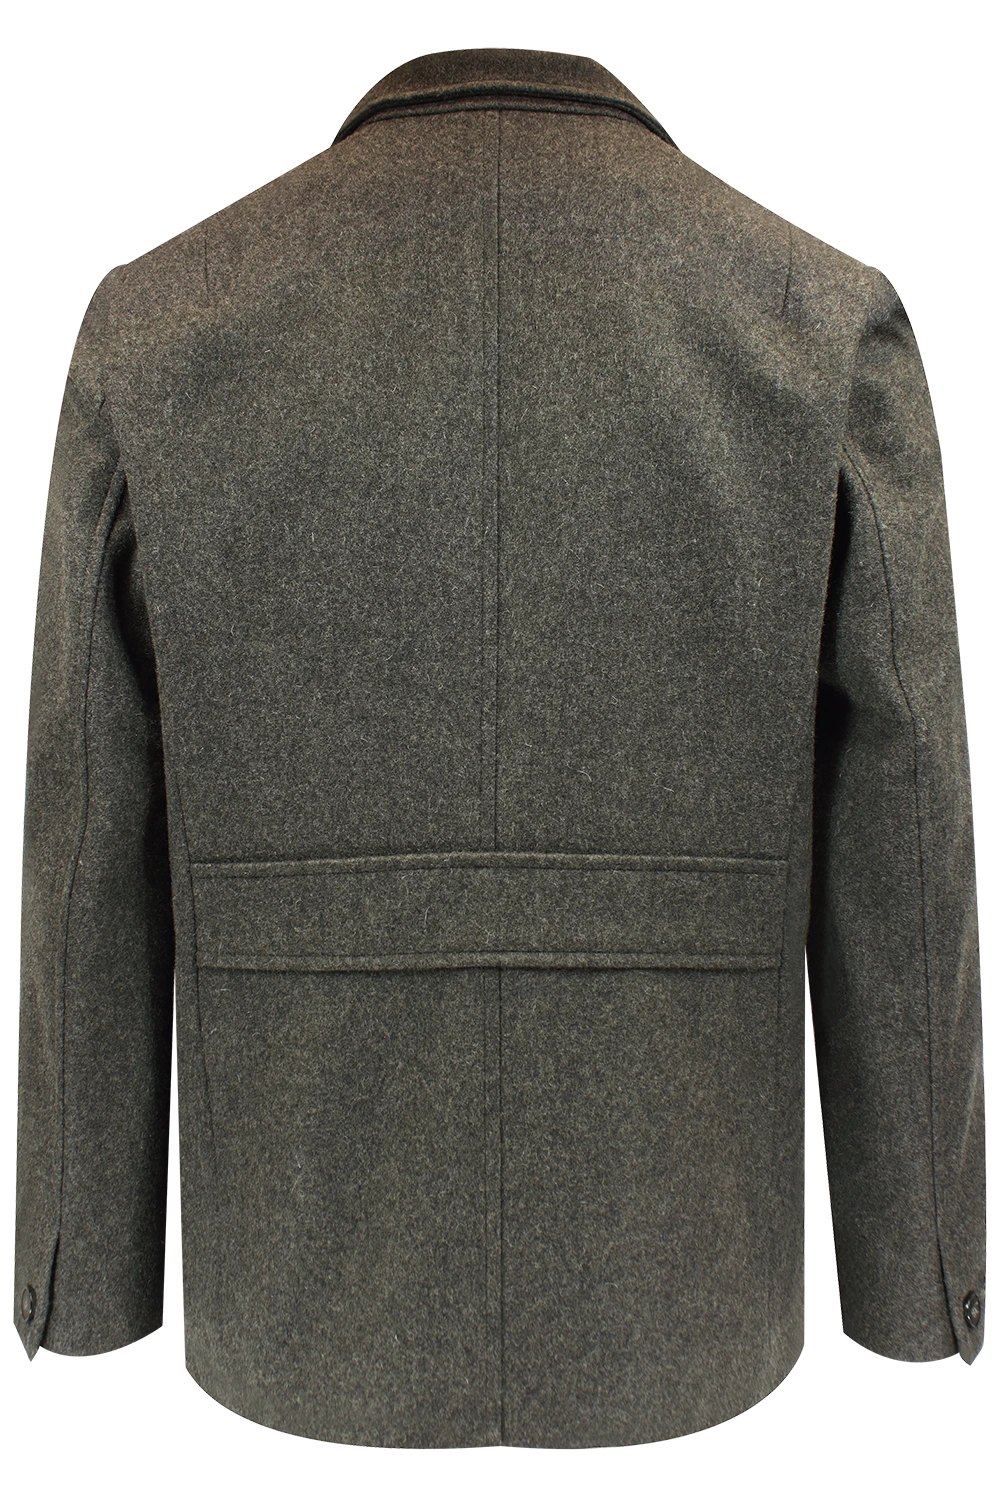 Cappotto corto in lana e cachemire verde militare retro